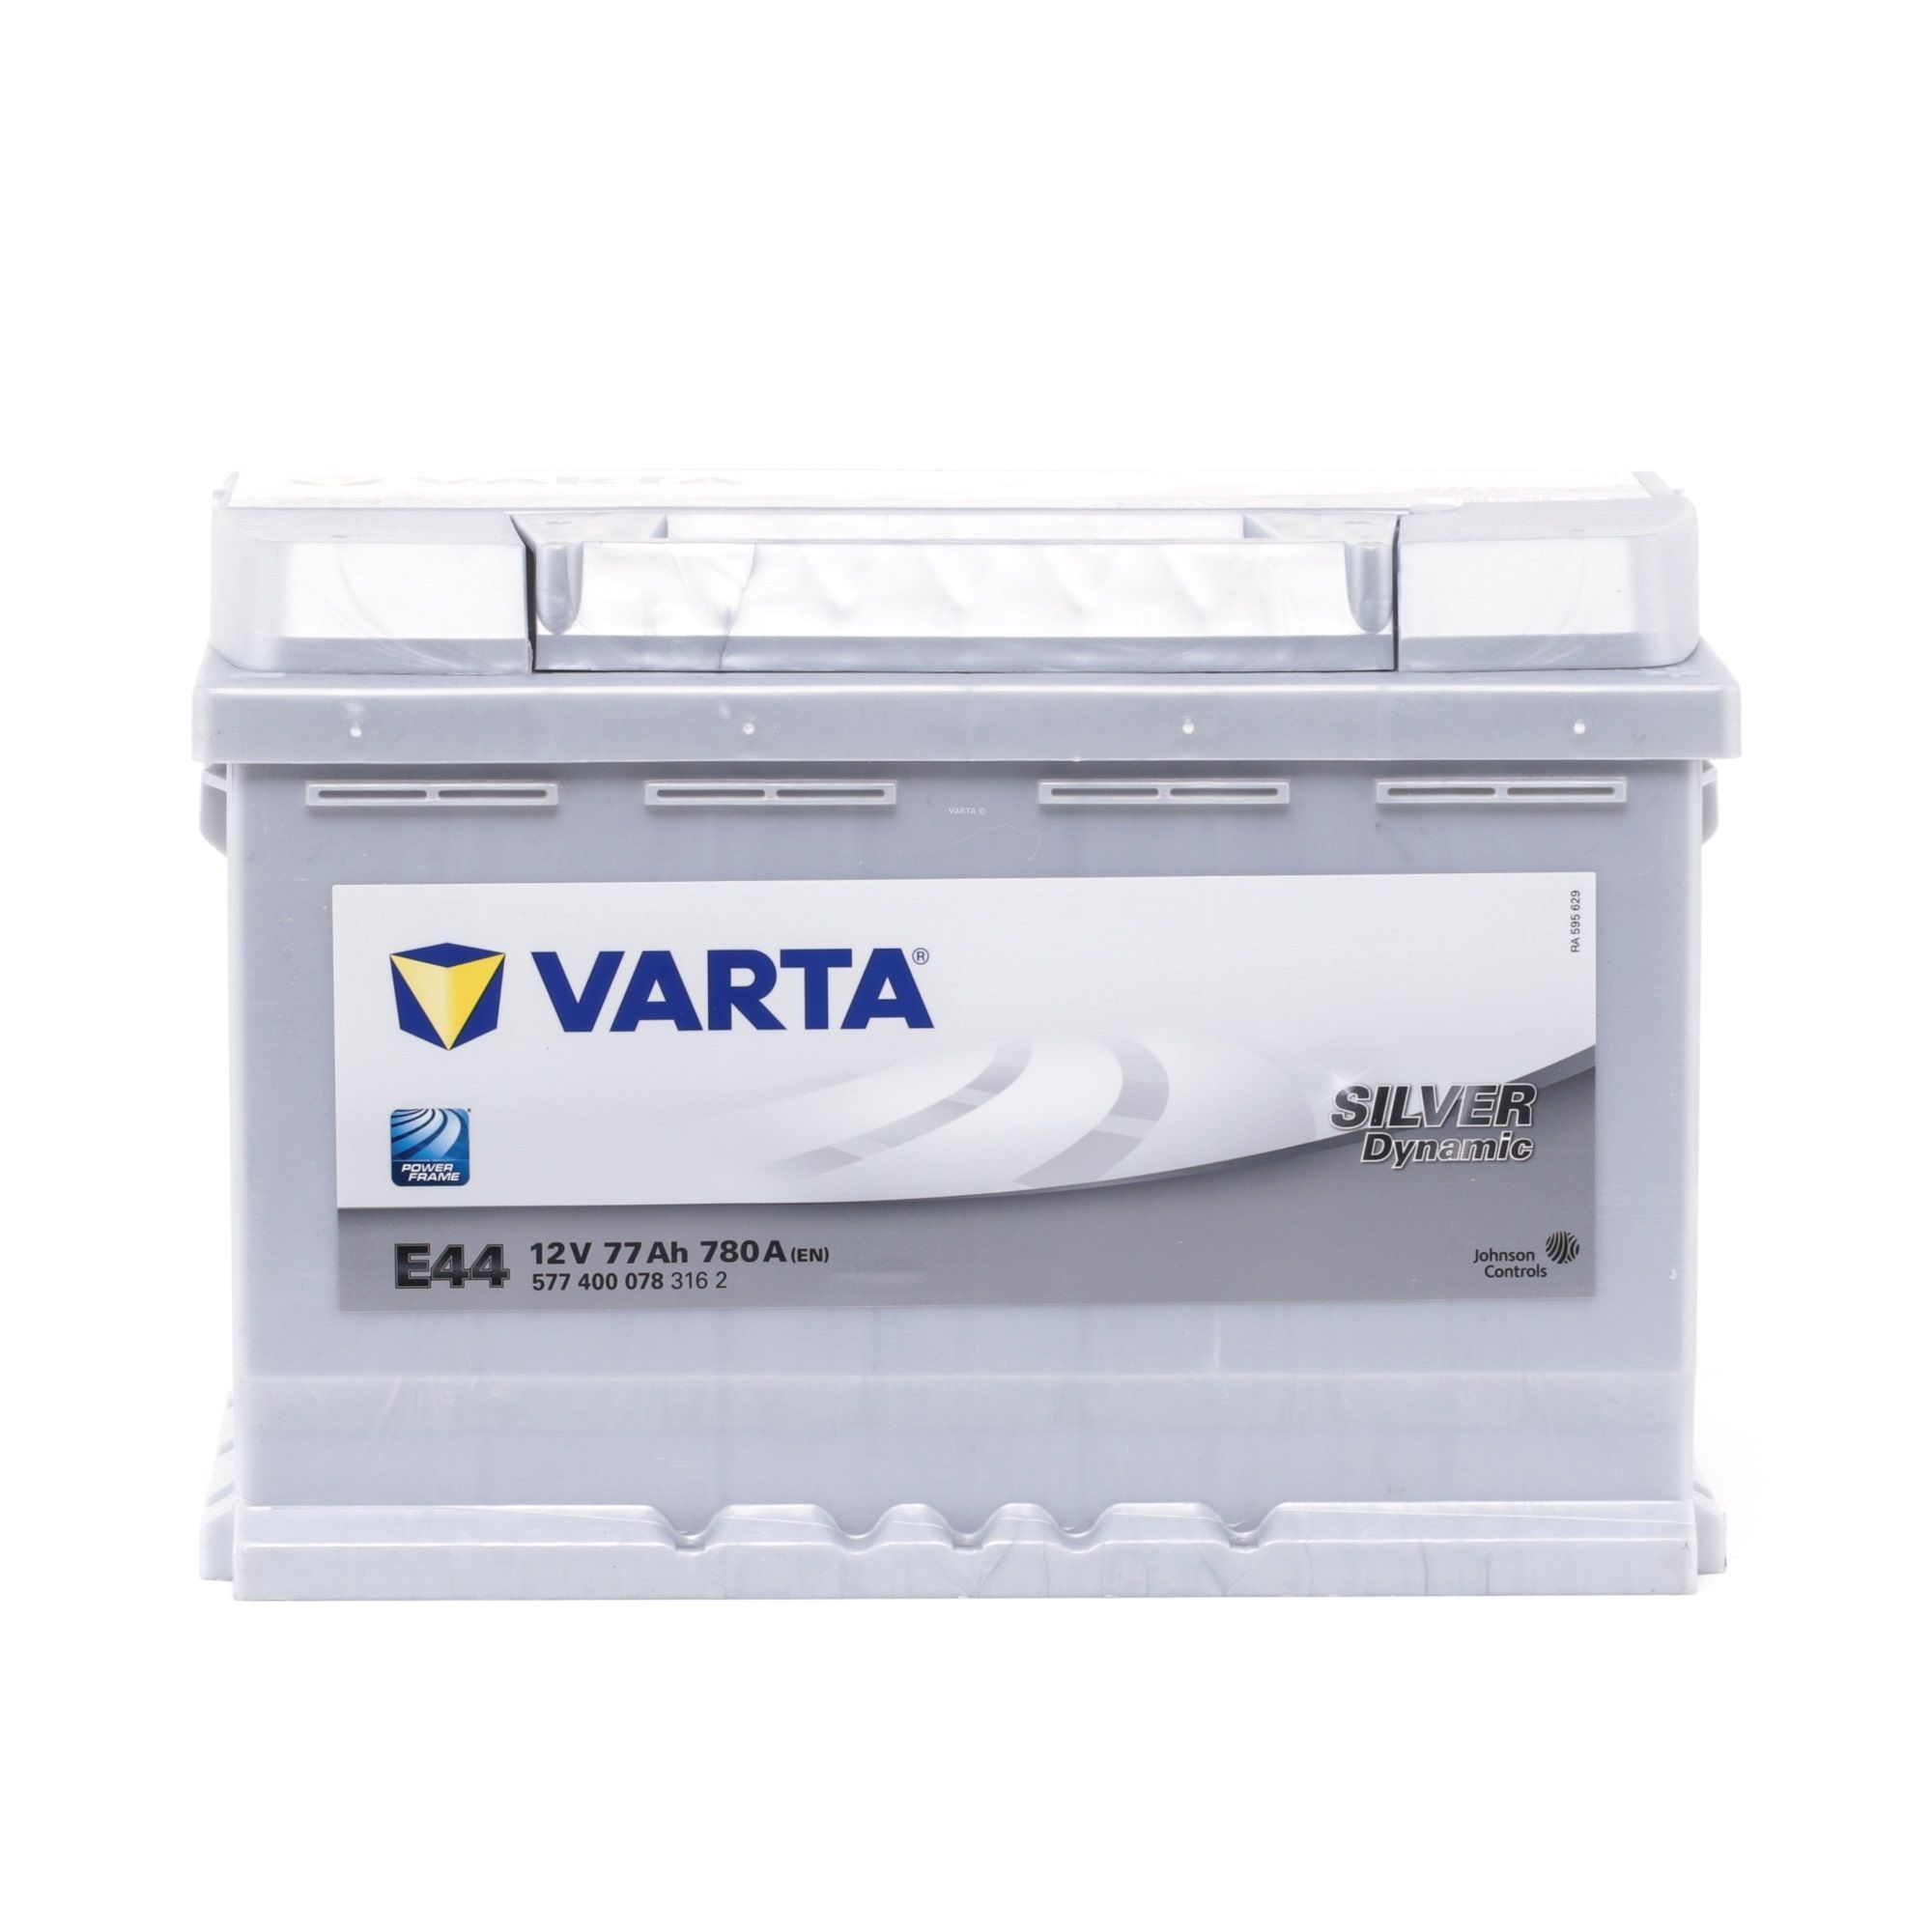 VARTA SILVER dynamic 5774000783162 Batterie de démarrage 12V 77Ah 780A B13 Batterie au plomb